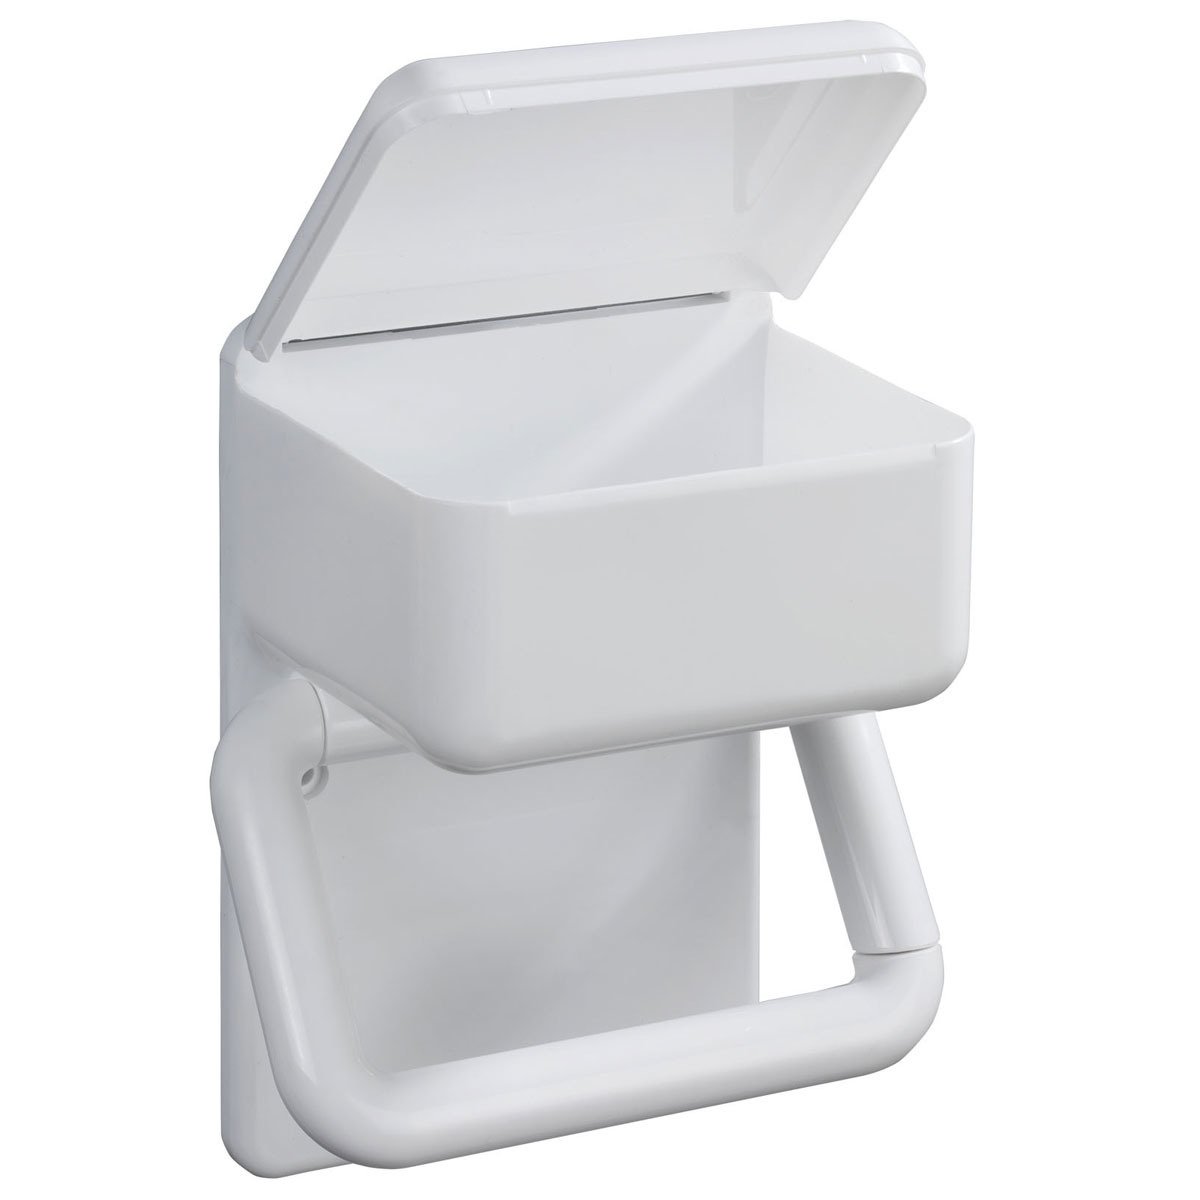 Toilettenpapierhalter 2 in | home24 1 kaufen